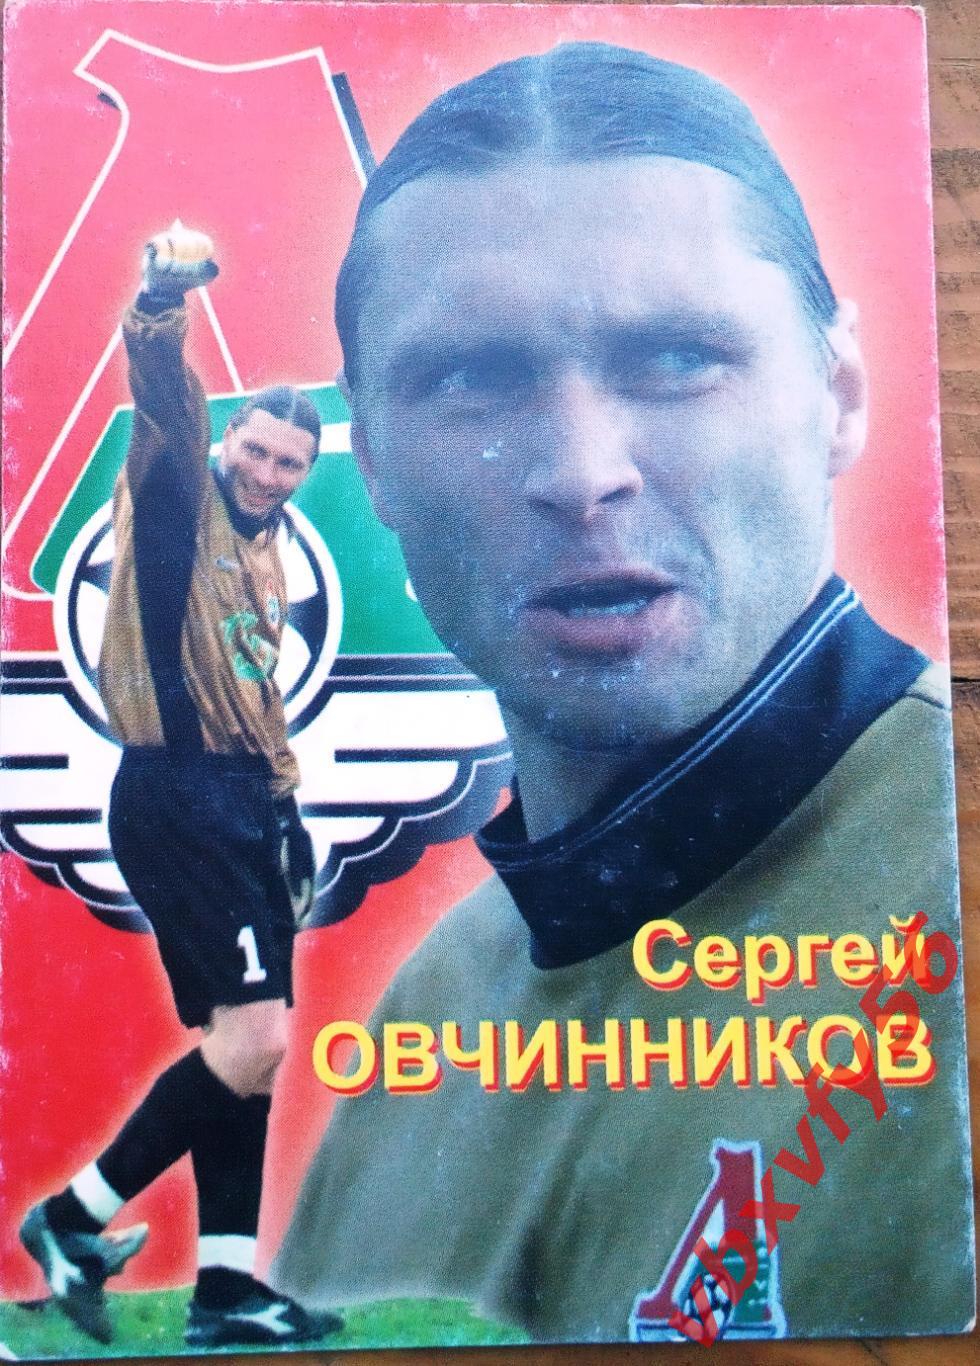 Сергей ОВЧИННИКОВ (Локомотив Москва)